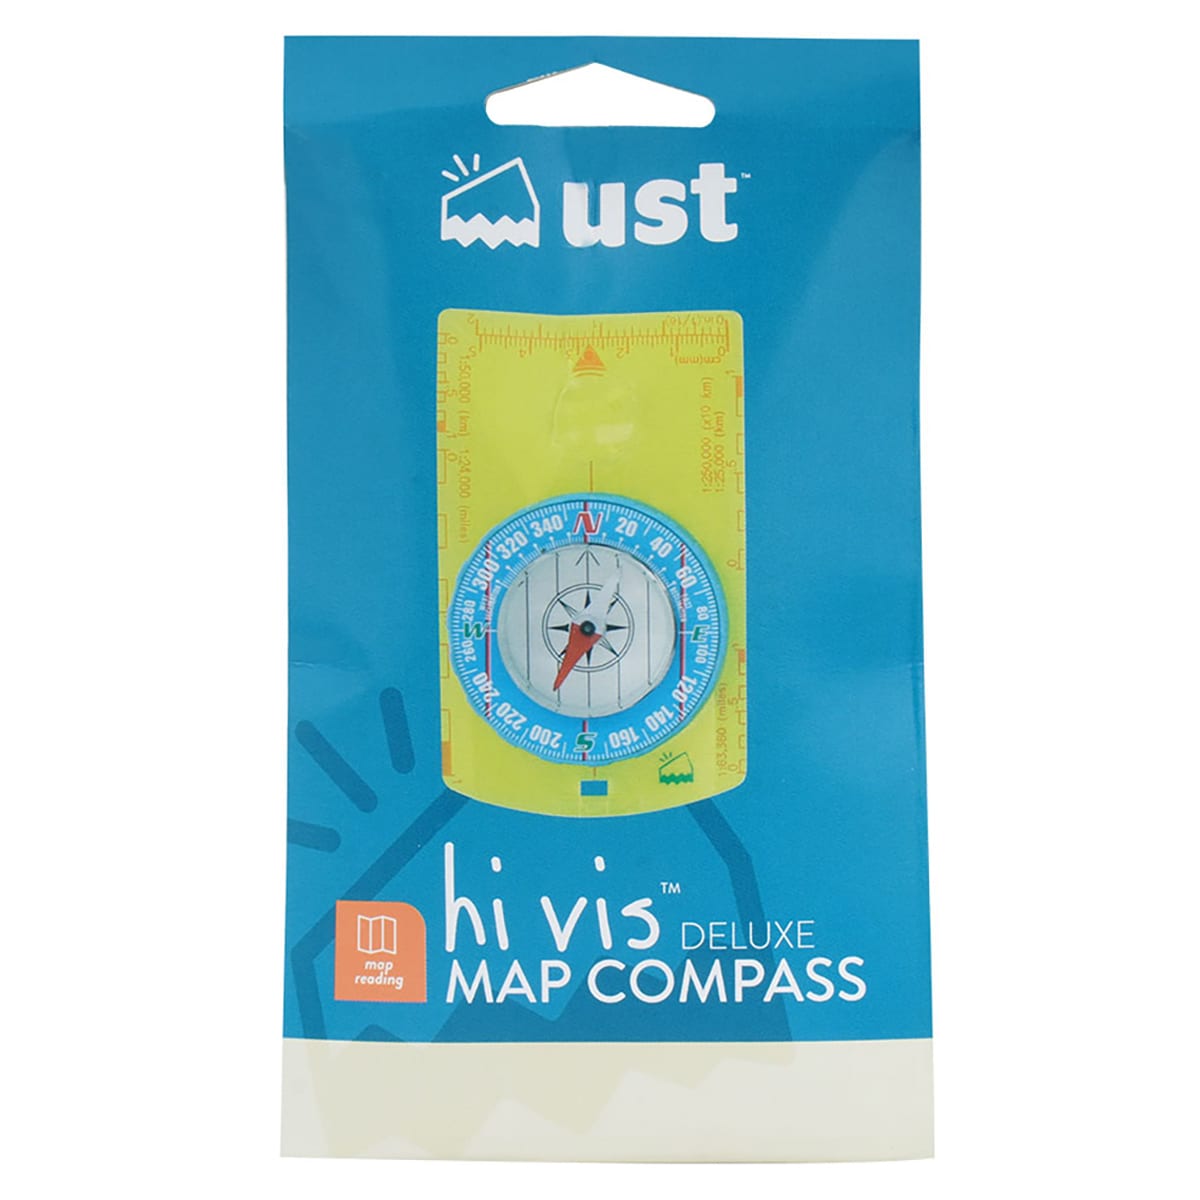 Картографічний компас UST Hi Vis Deluxe Map Compass - Синій